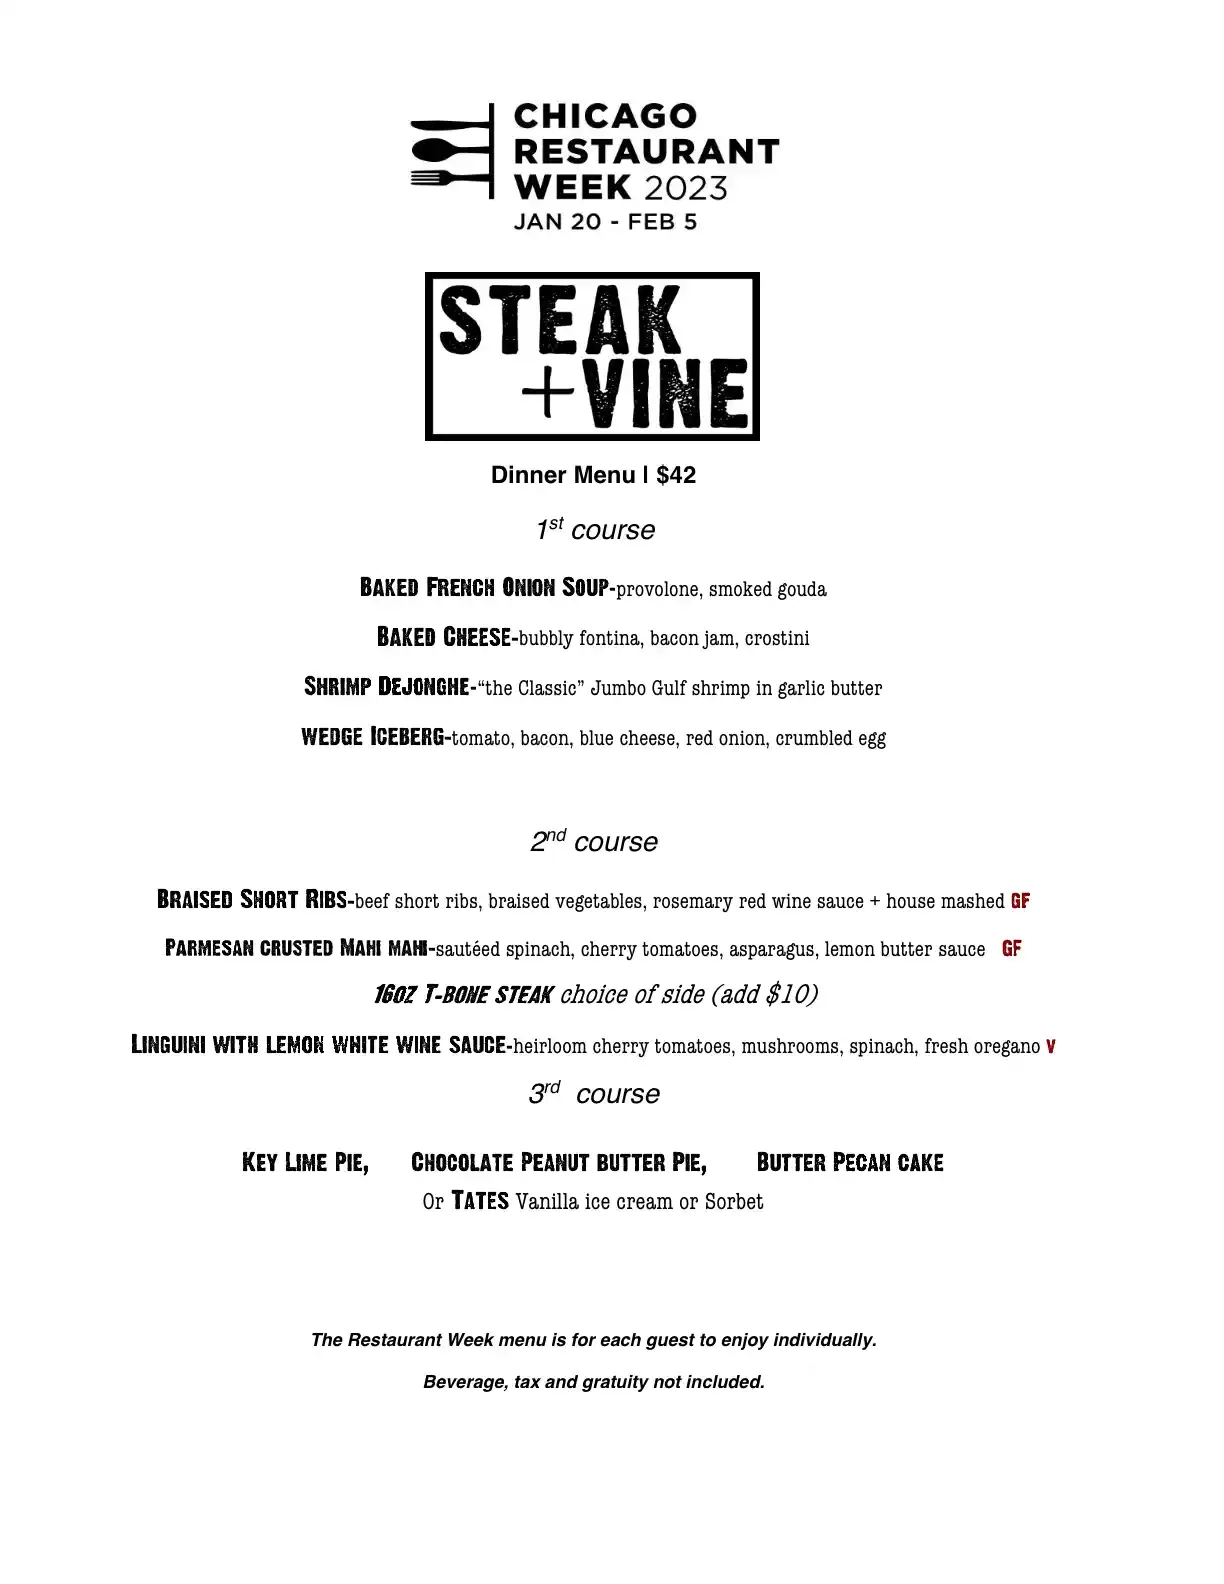 Chicago Restaurant Week 2023 Menu Steak And Vine